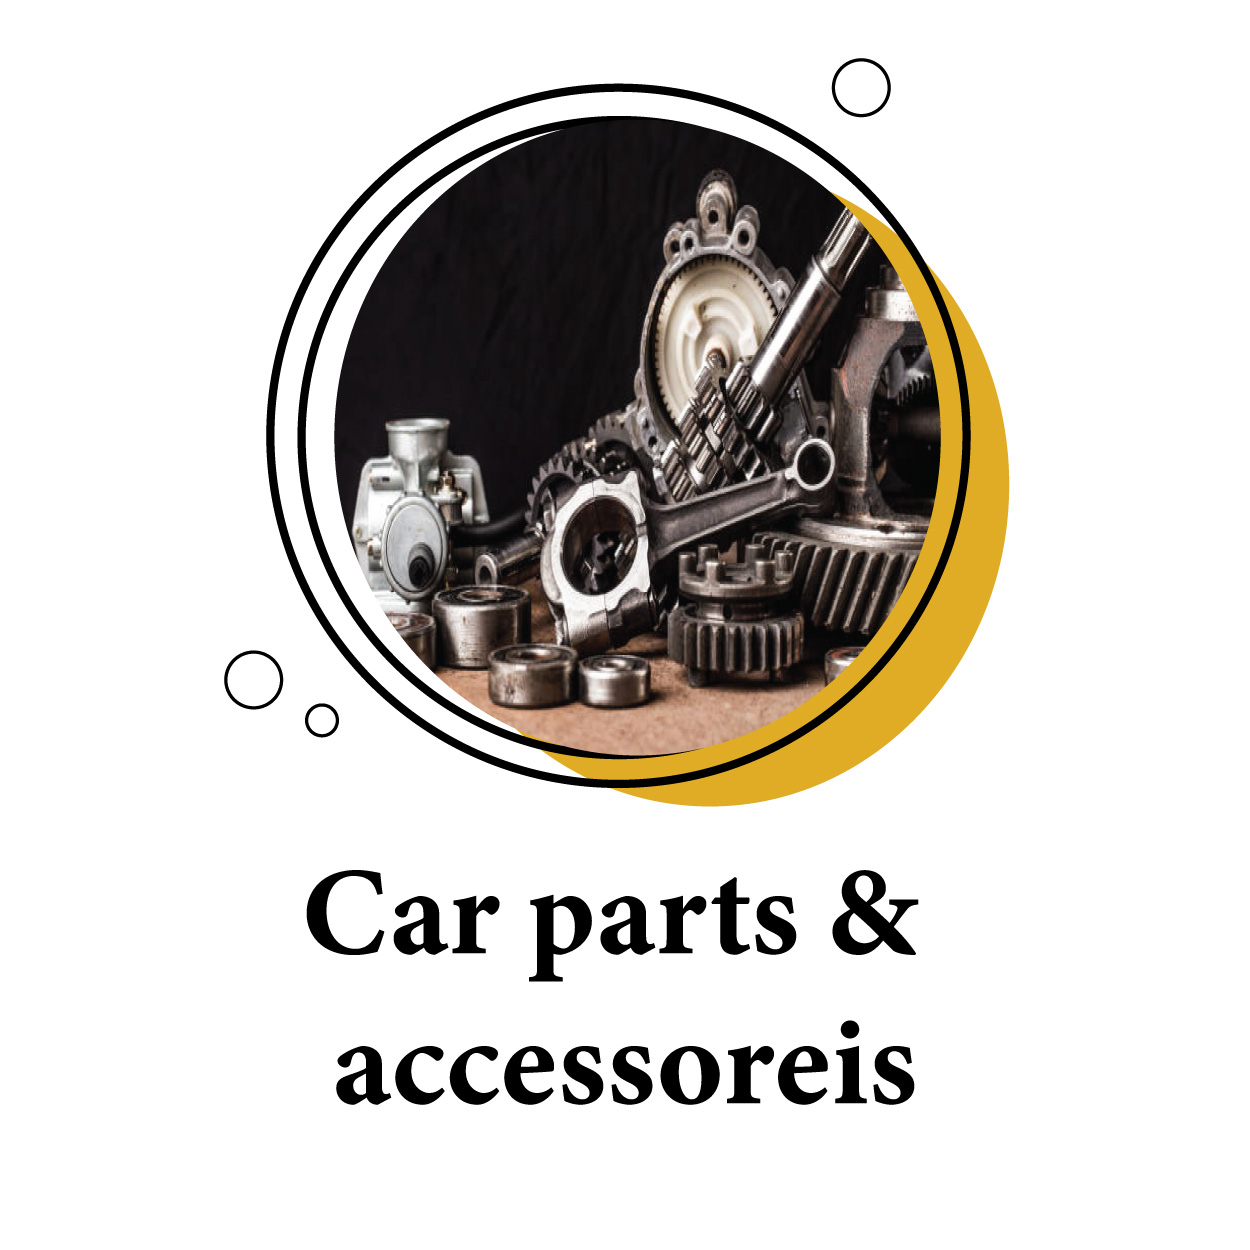 Car parts & accessoreis